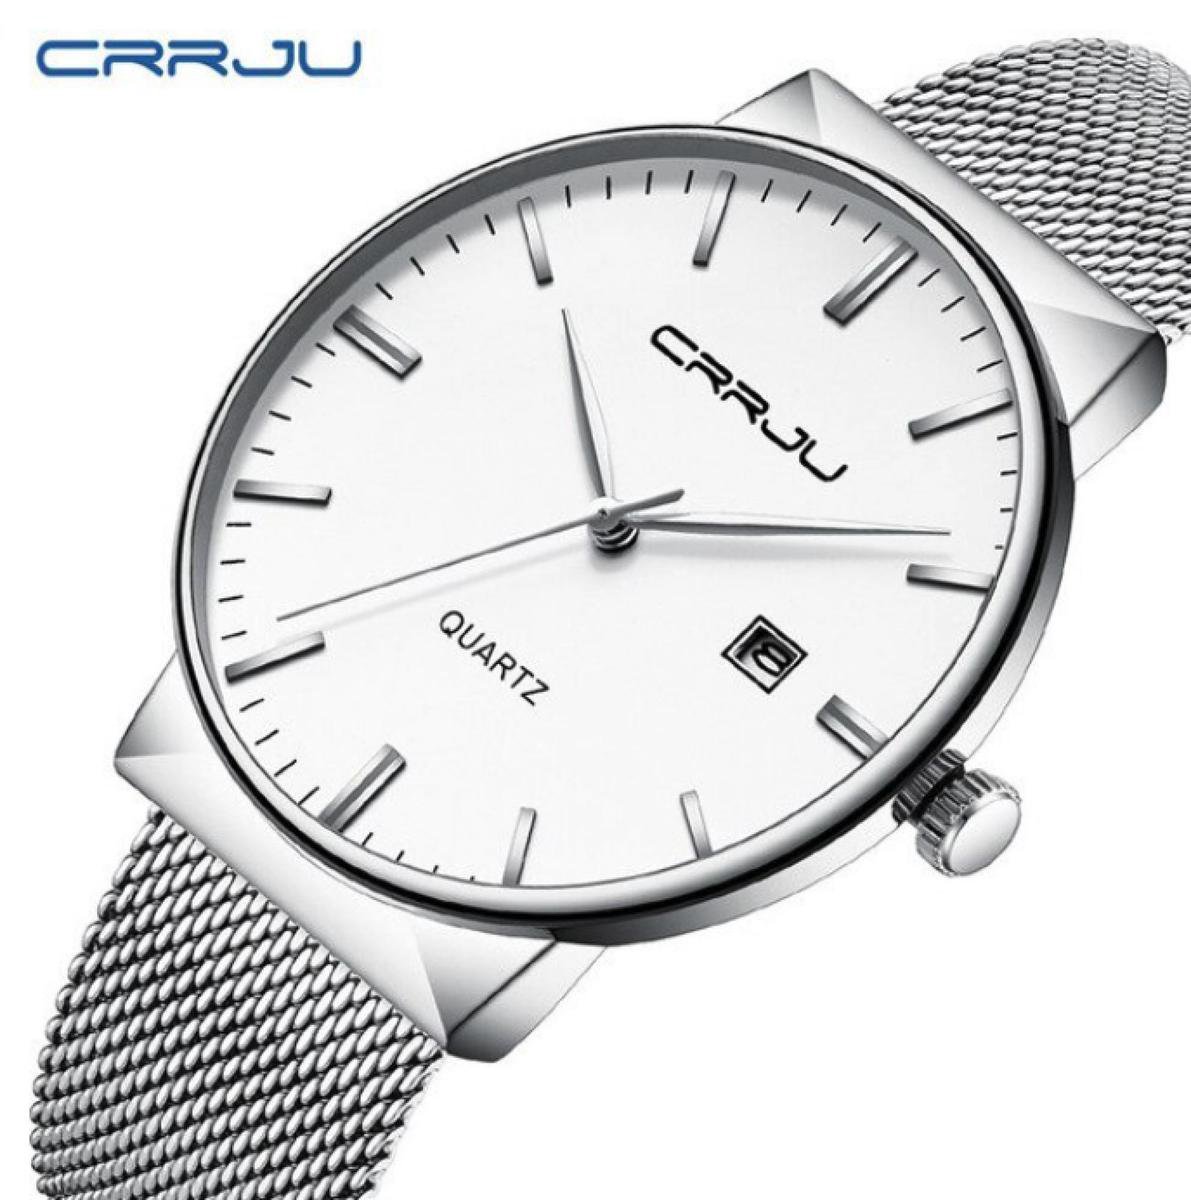 CRRJU Horloge Quartz Ø 41 - Met Datumaanduiding - Zilver-Wit - Staal - Inclusief Horlogedoosje